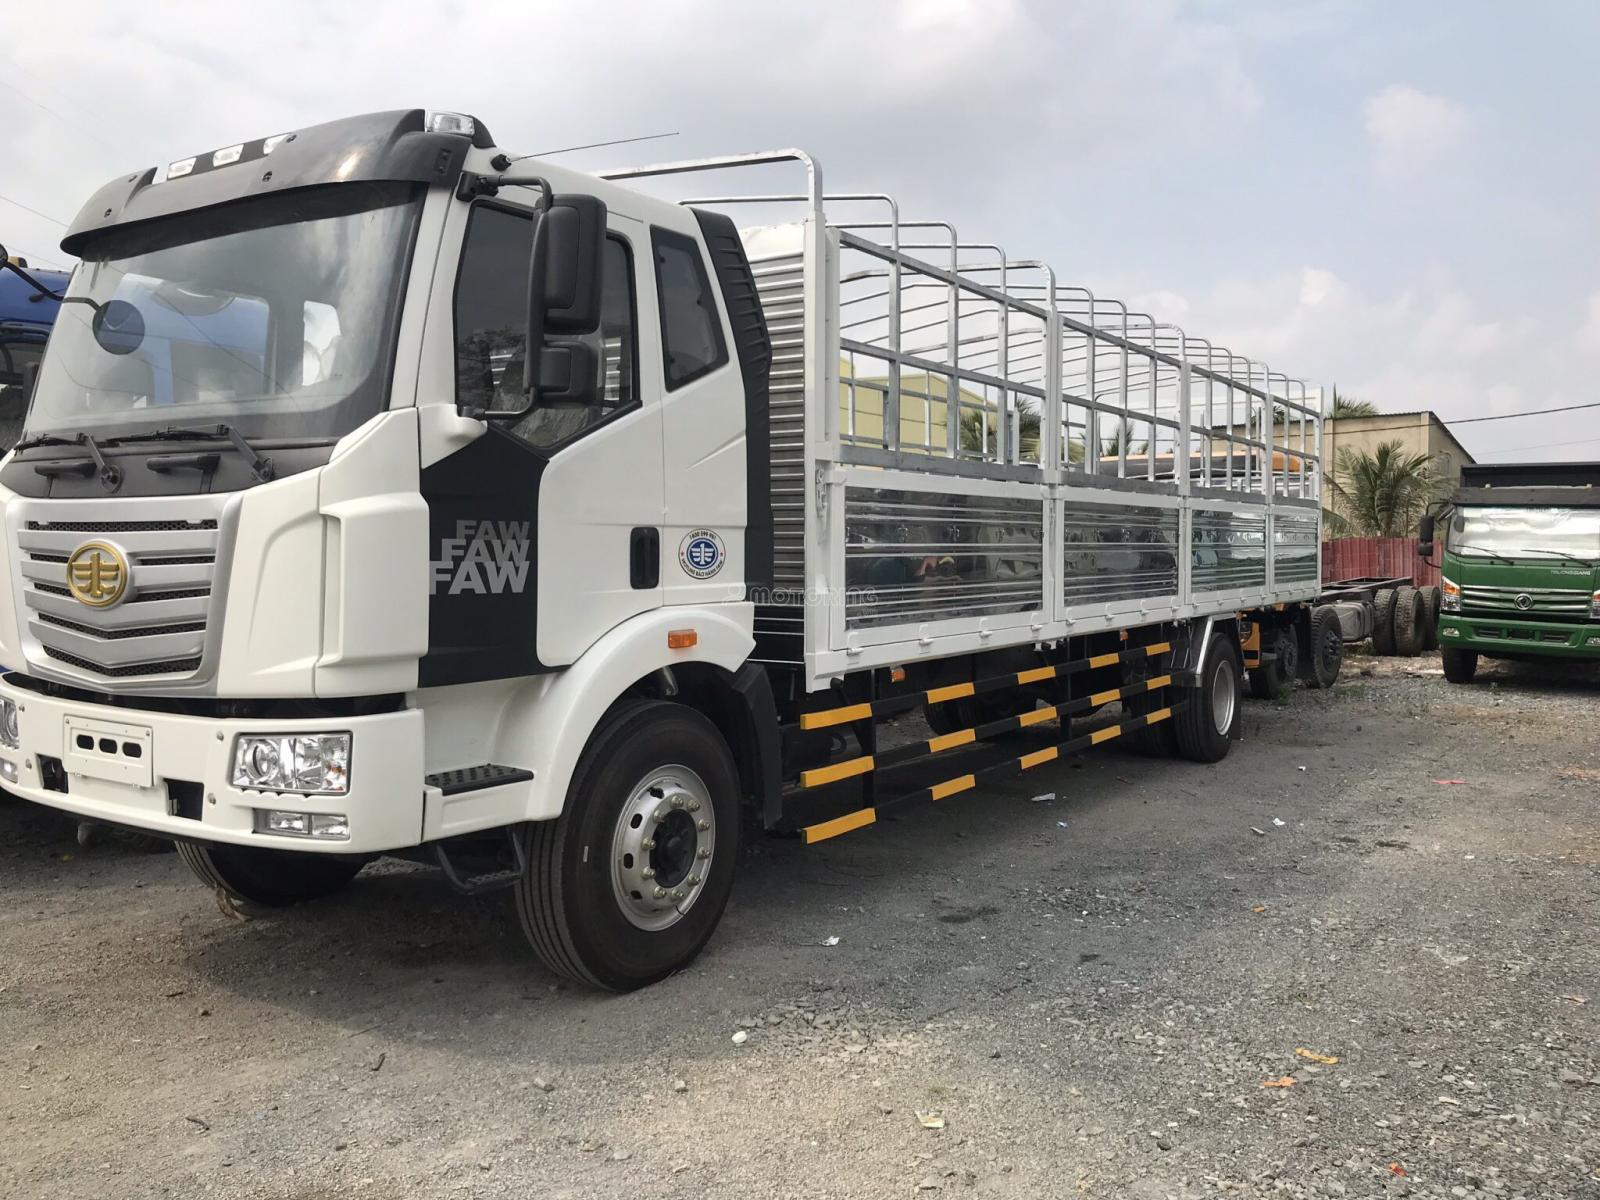 Howo La Dalat 7T2 2019 - FAW 9T2-2019 thùng 9m5 euro 5, xe nhập khẩu